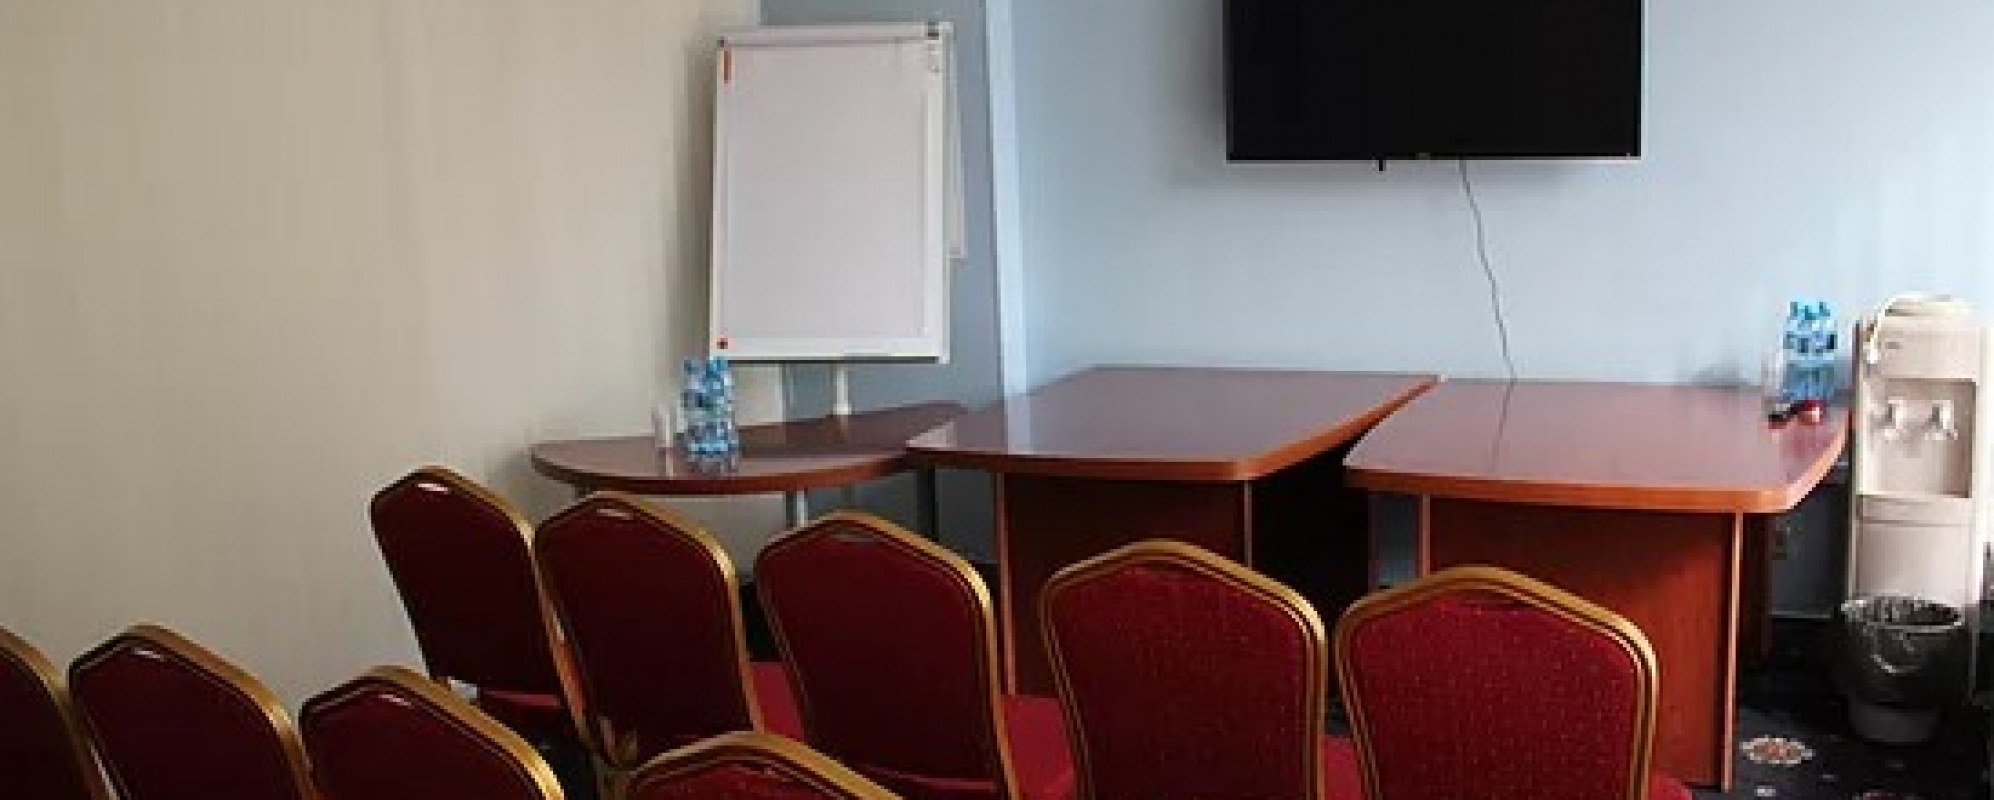 Фотографии комнаты для переговоров Новокузнецкая